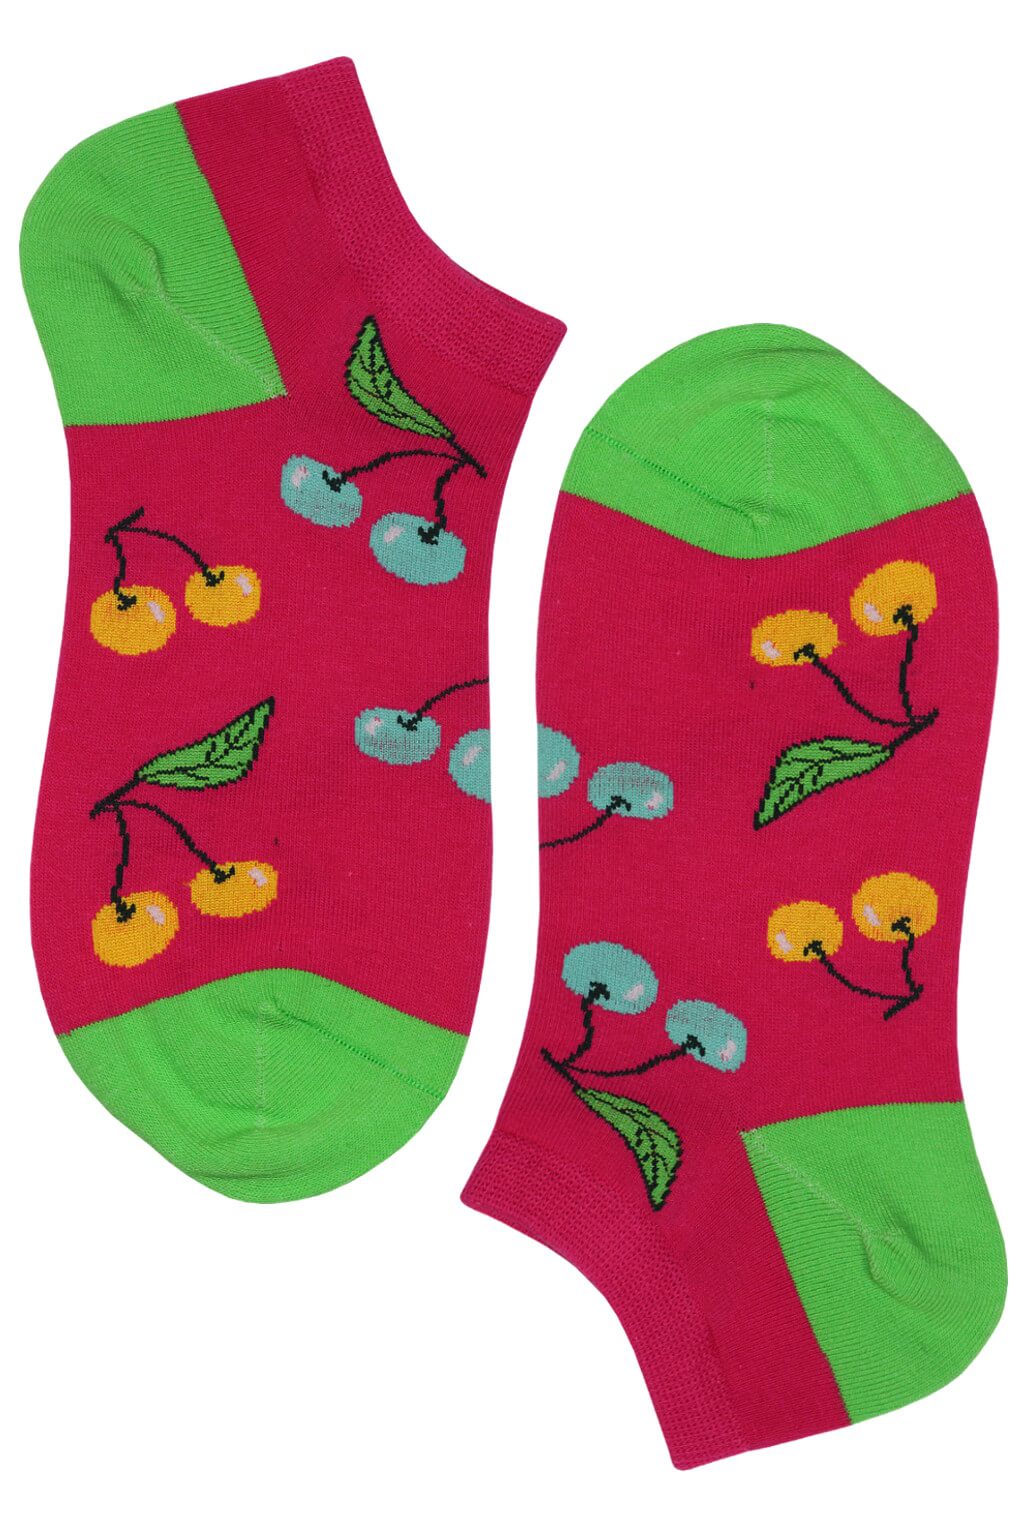 Crazy Cherries kotníčkové bavlněné ponožky ECC2001 35-38 růžová